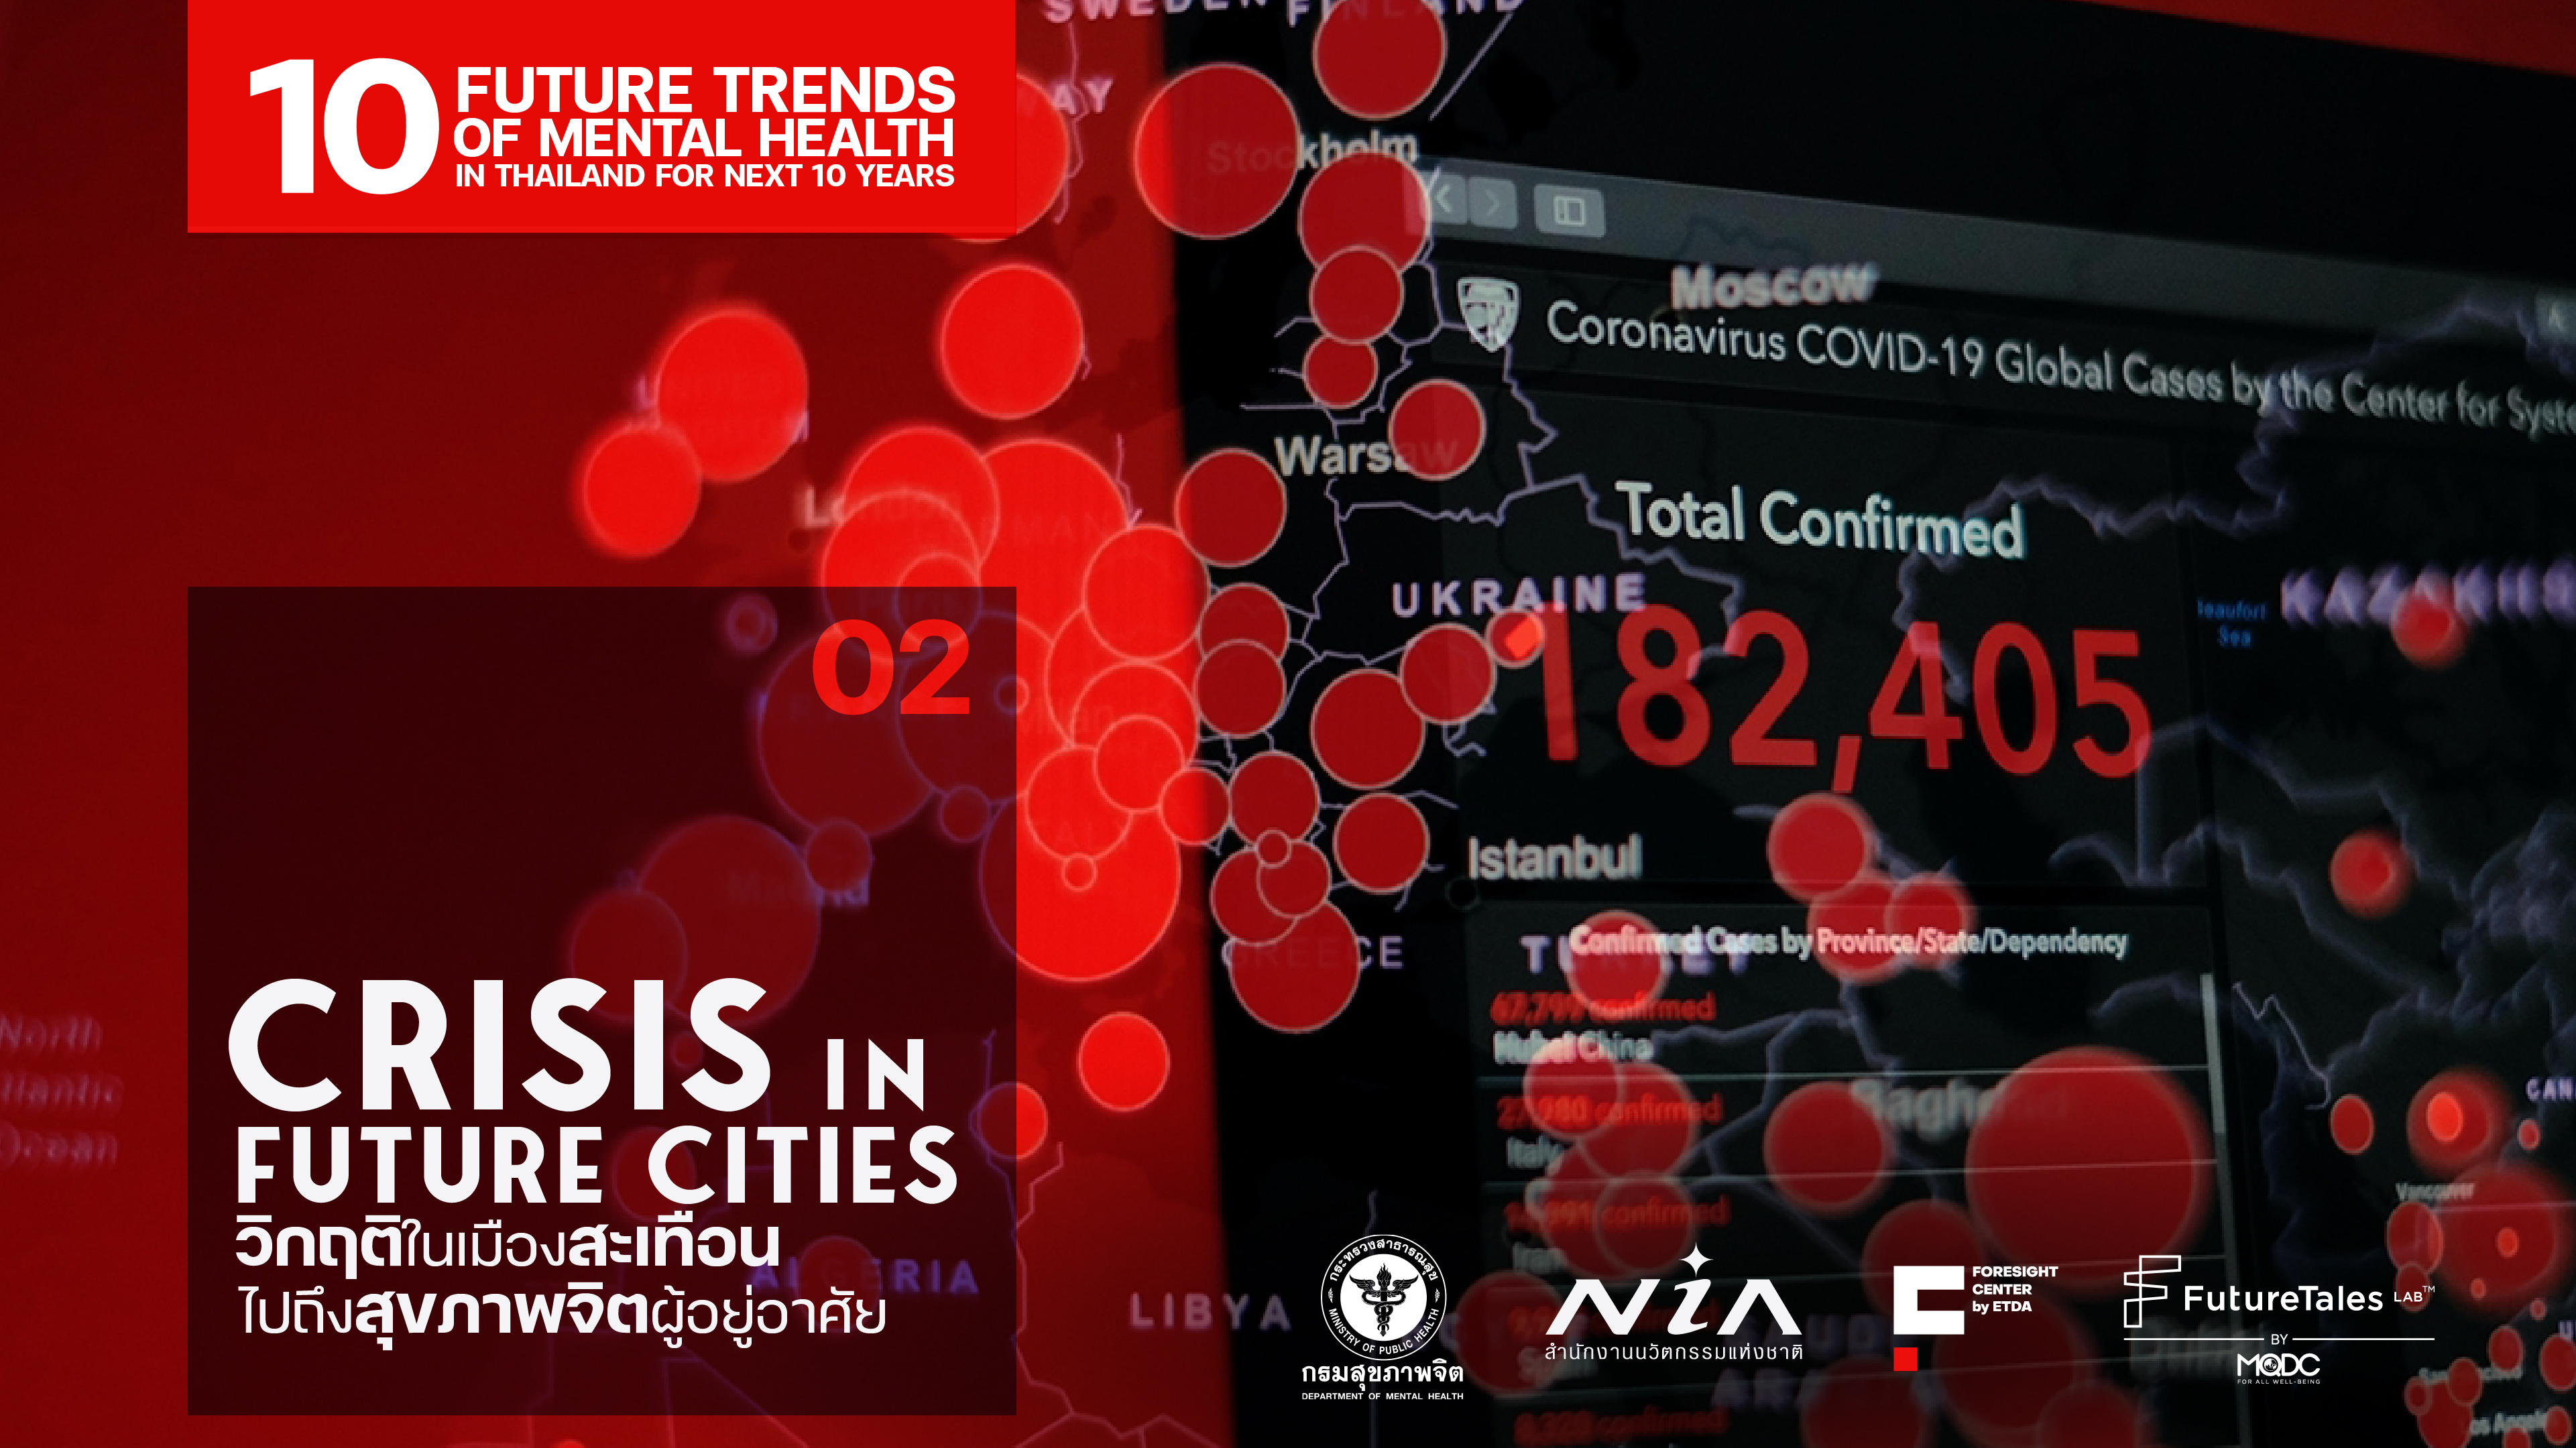 Crisis in future cities : วิกฤติในเมืองสะเทือนไปถึงสุขภาพจิตผู้อยู่อาศัย